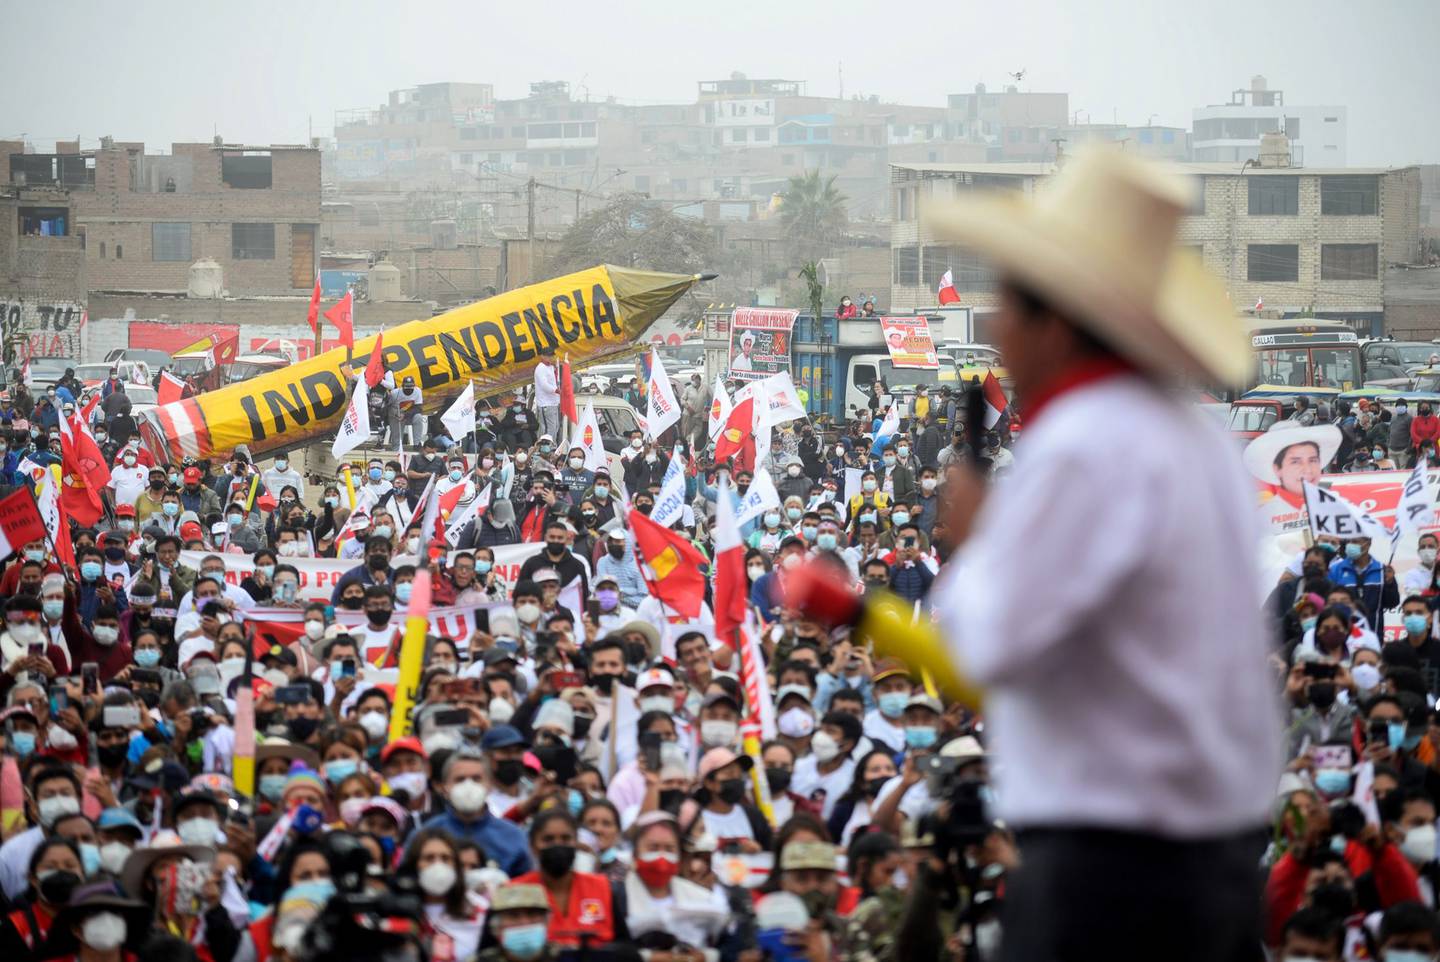 Una de las propuestas bandera durante la campaña presidencial del presidente Castillo fue la convocatoria a una Asamblea Constituyente para redactar una nueva Constitución del Perú.dfd